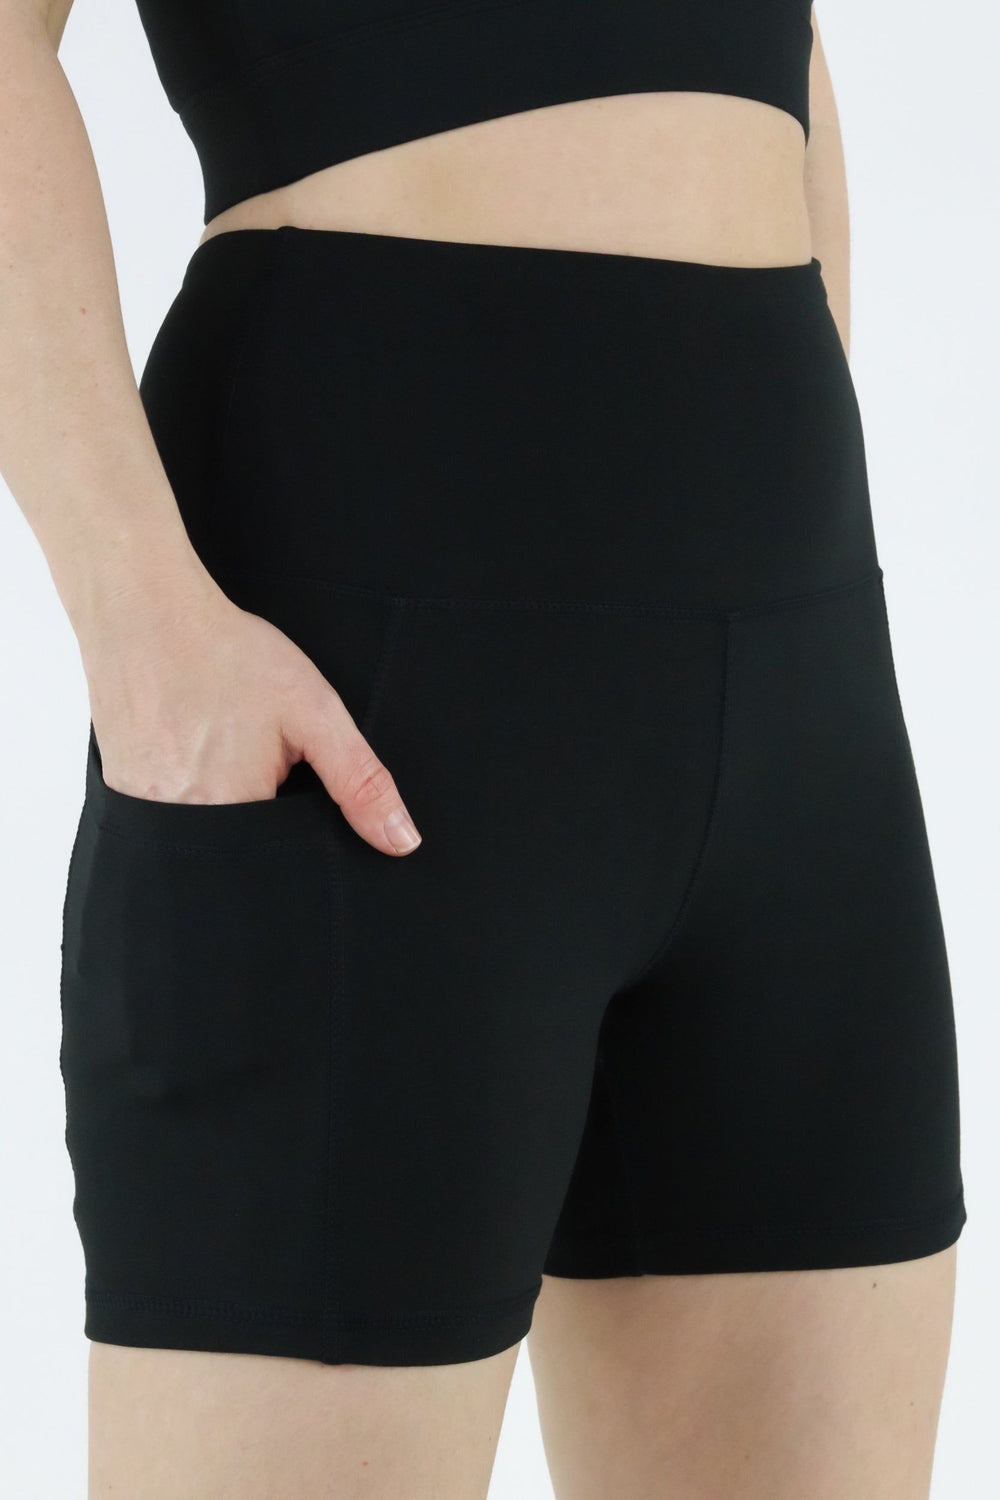 Black - Hybrid 2.0 - Leg Pockets - Shorty Shorts Hybrid Shorts Pawlie   